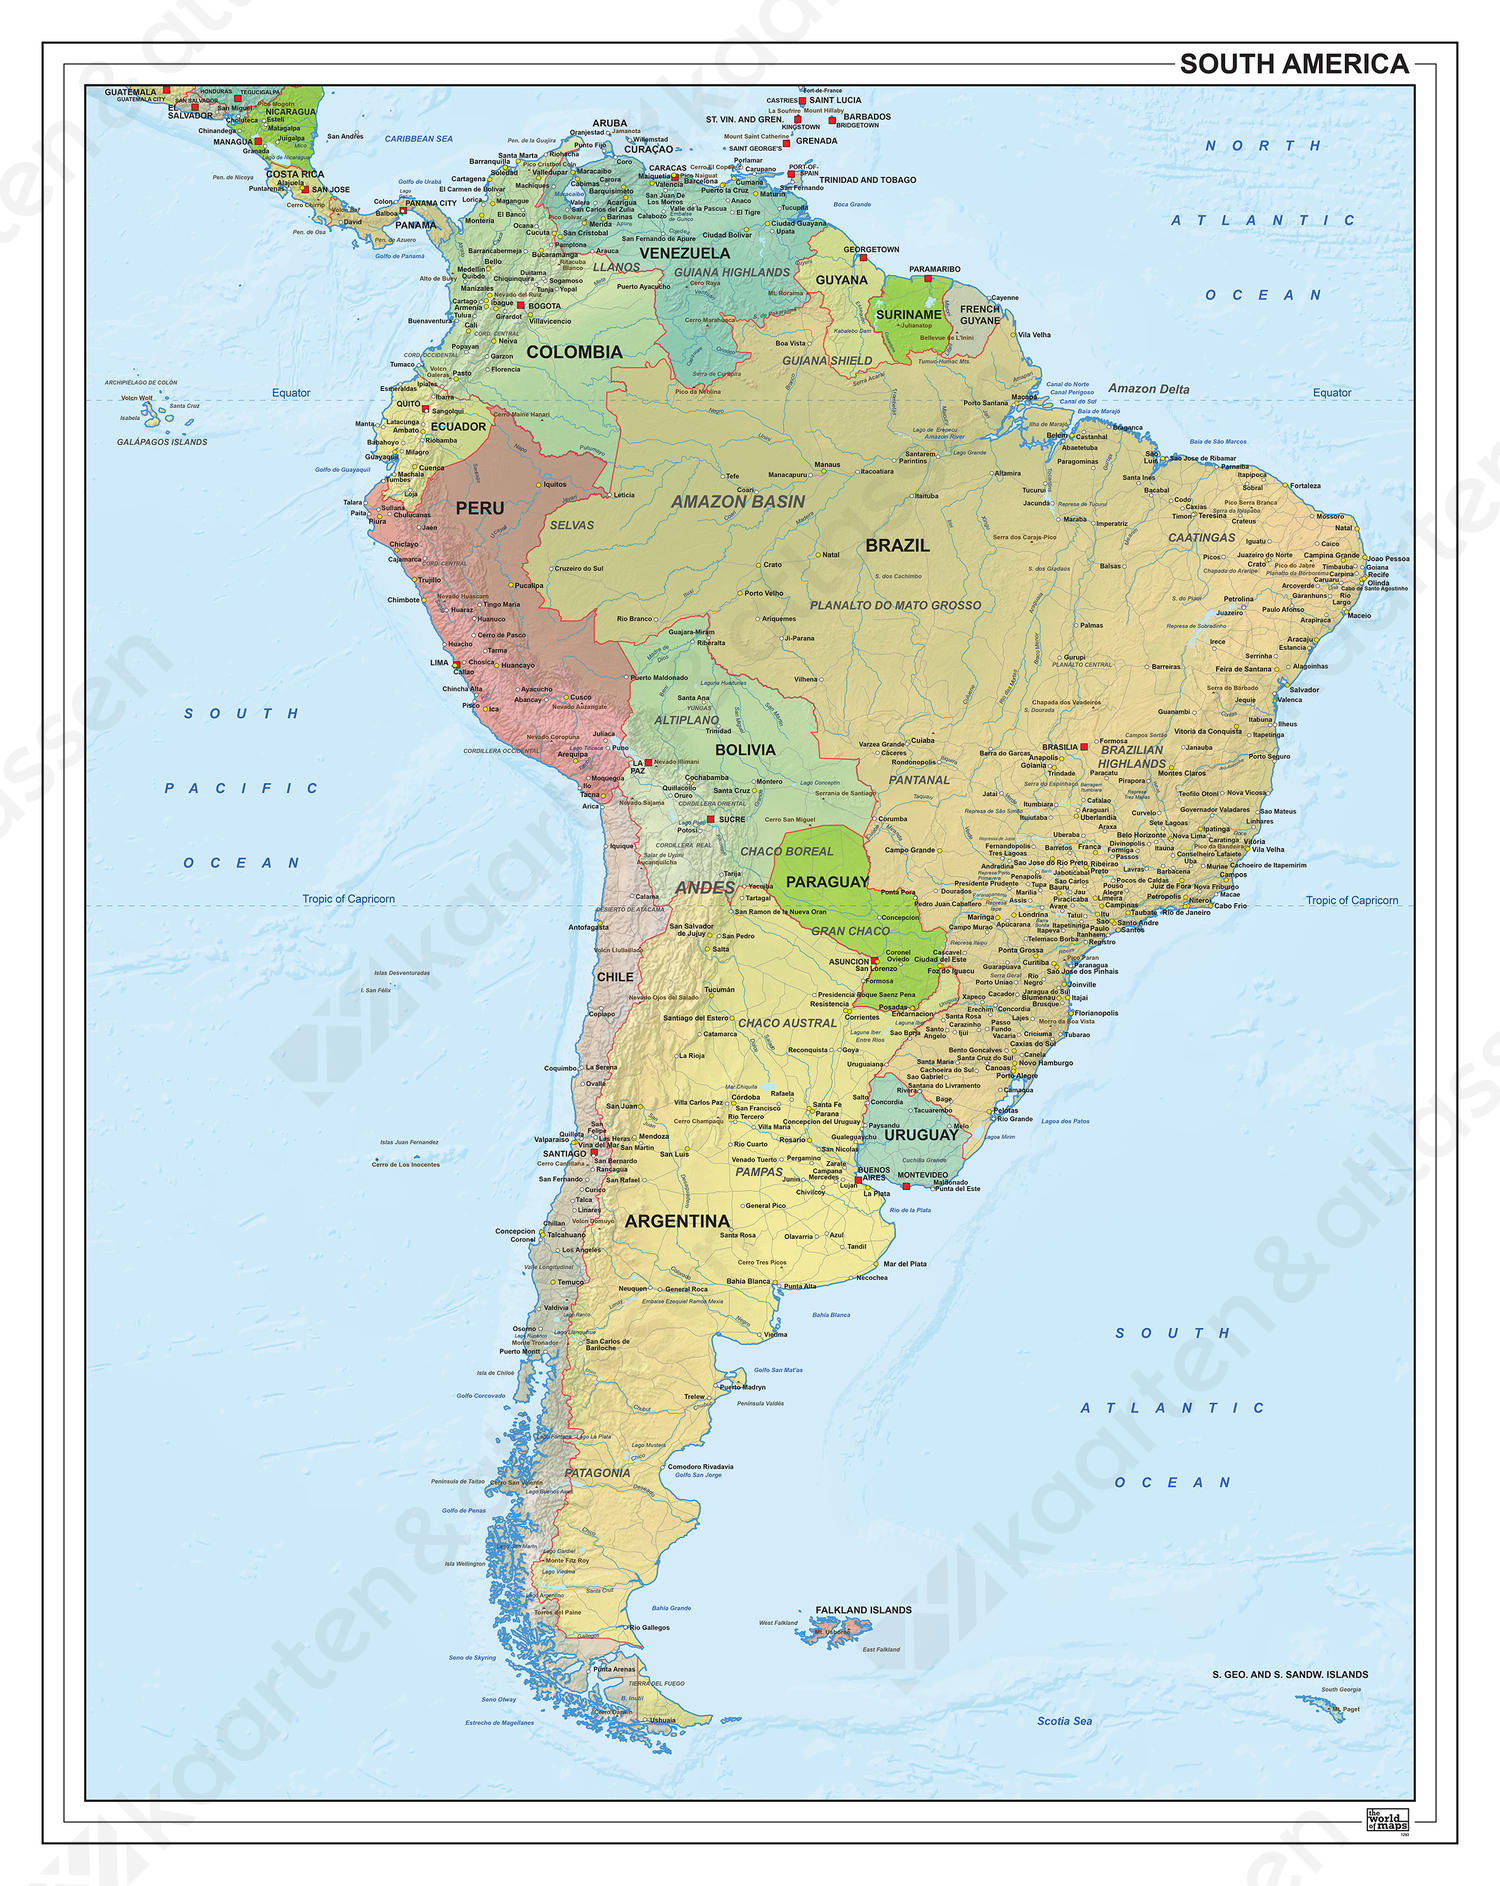 Zuid-Amerika staatkundig met reliëf